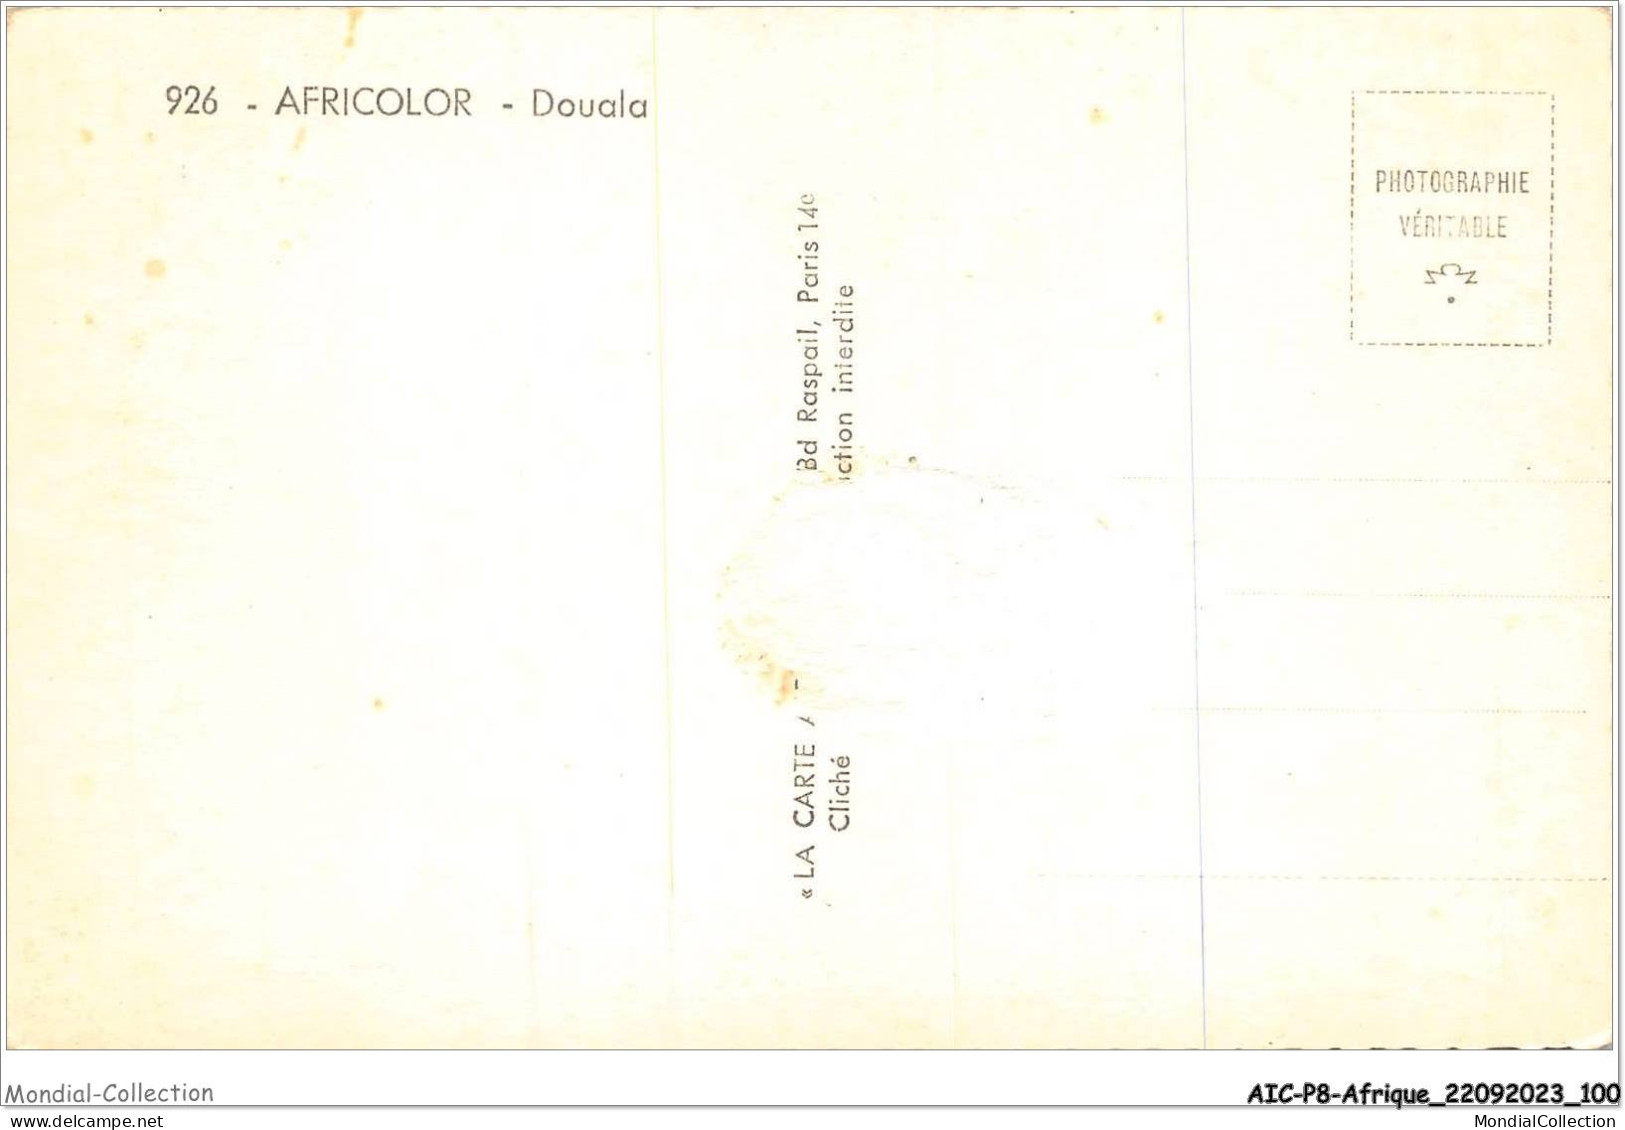 AICP8-AFRIQUE-0904 - AFRICOLOR - DOUALA - Cameroun